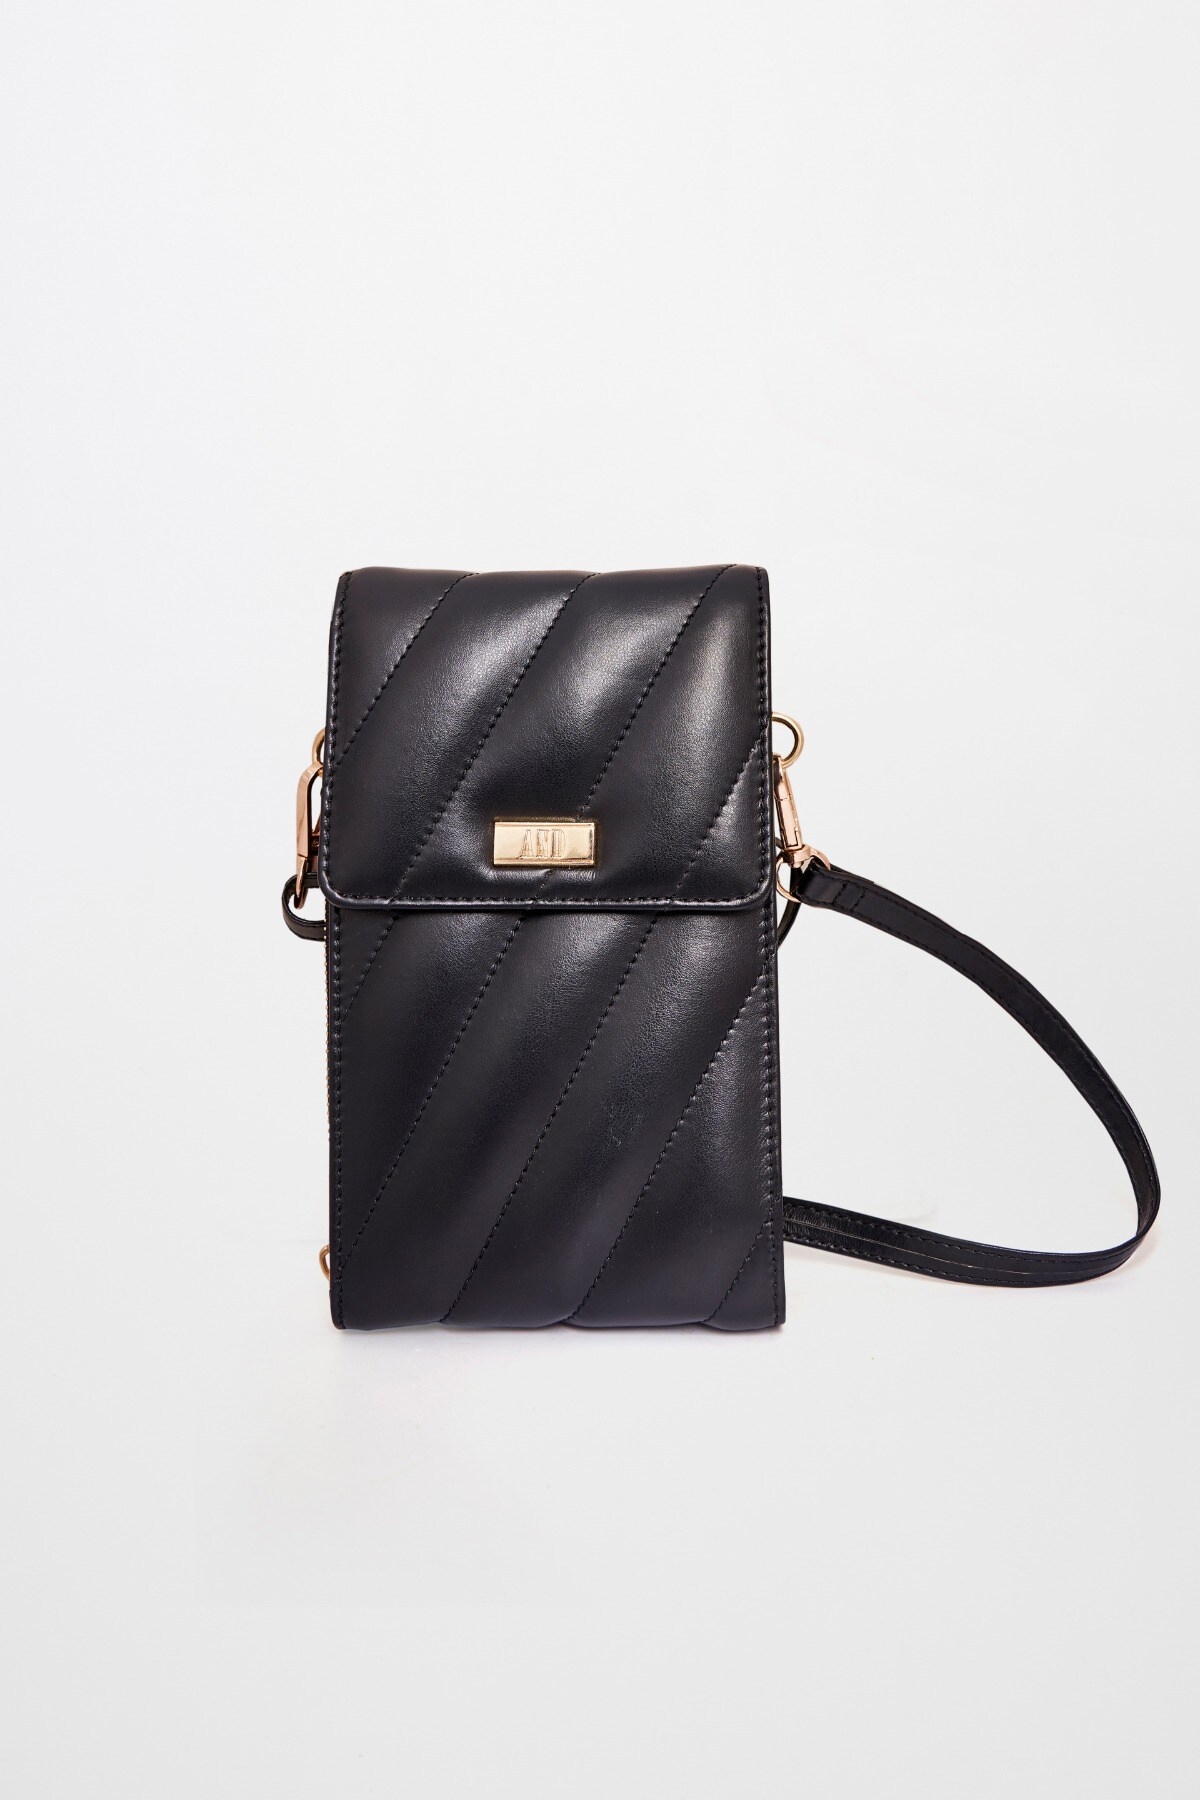 AND | Black Handbag 1